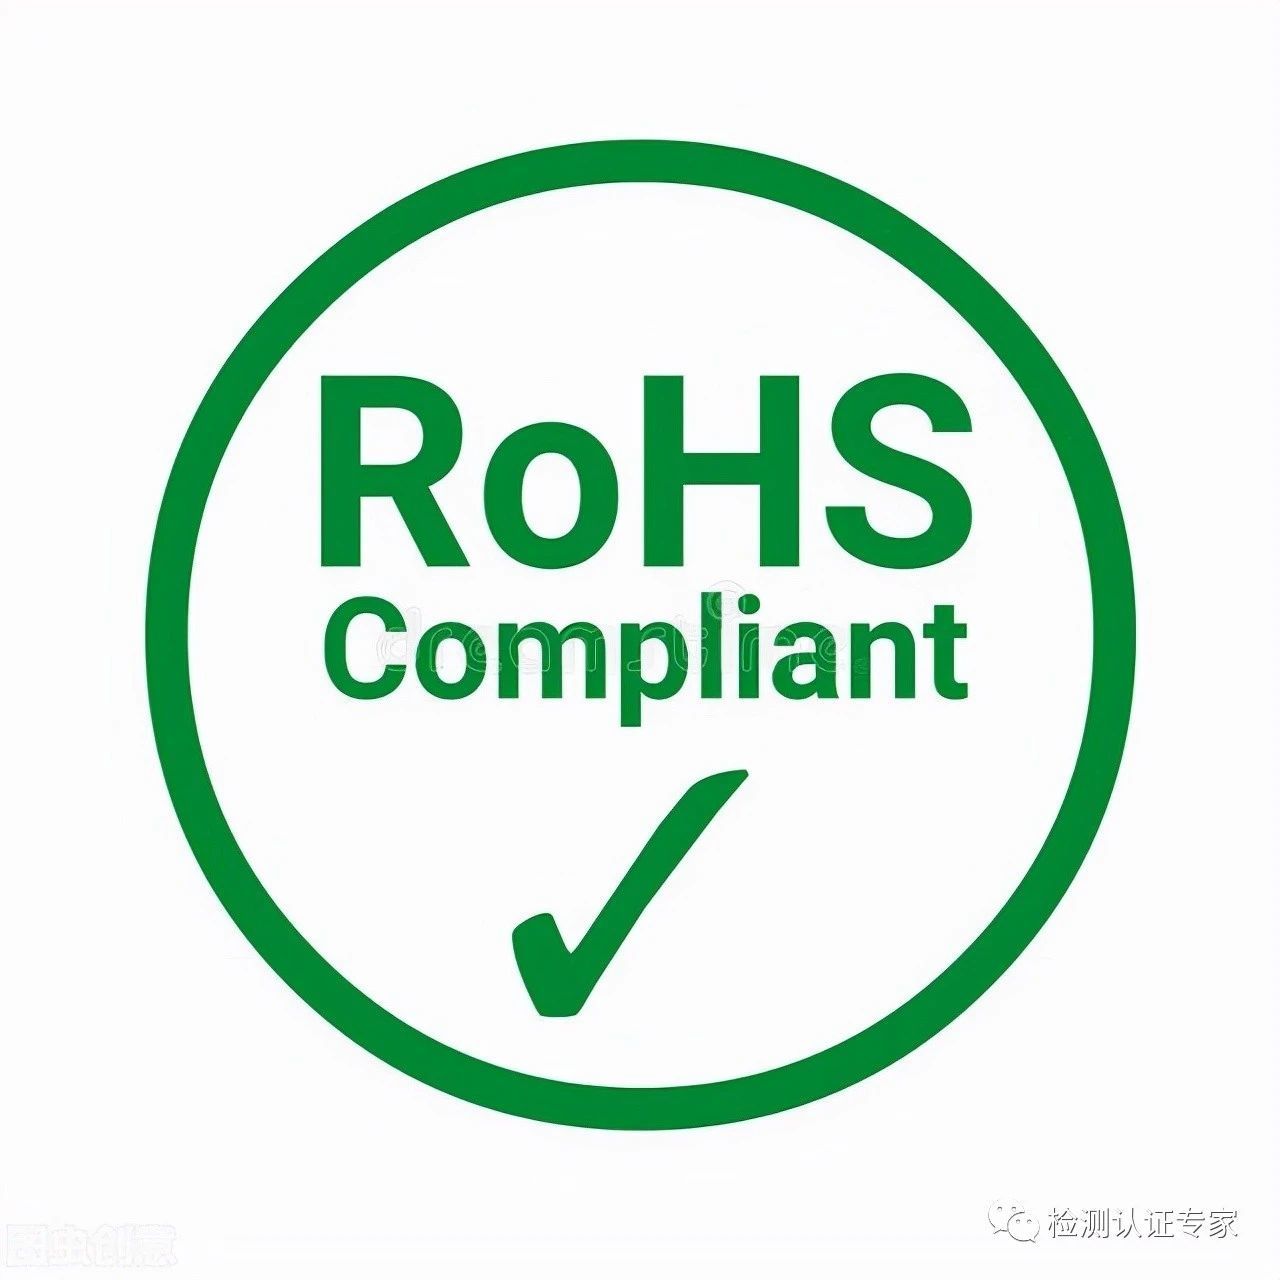 ROHS2.0与ROHS具体有什么区别？